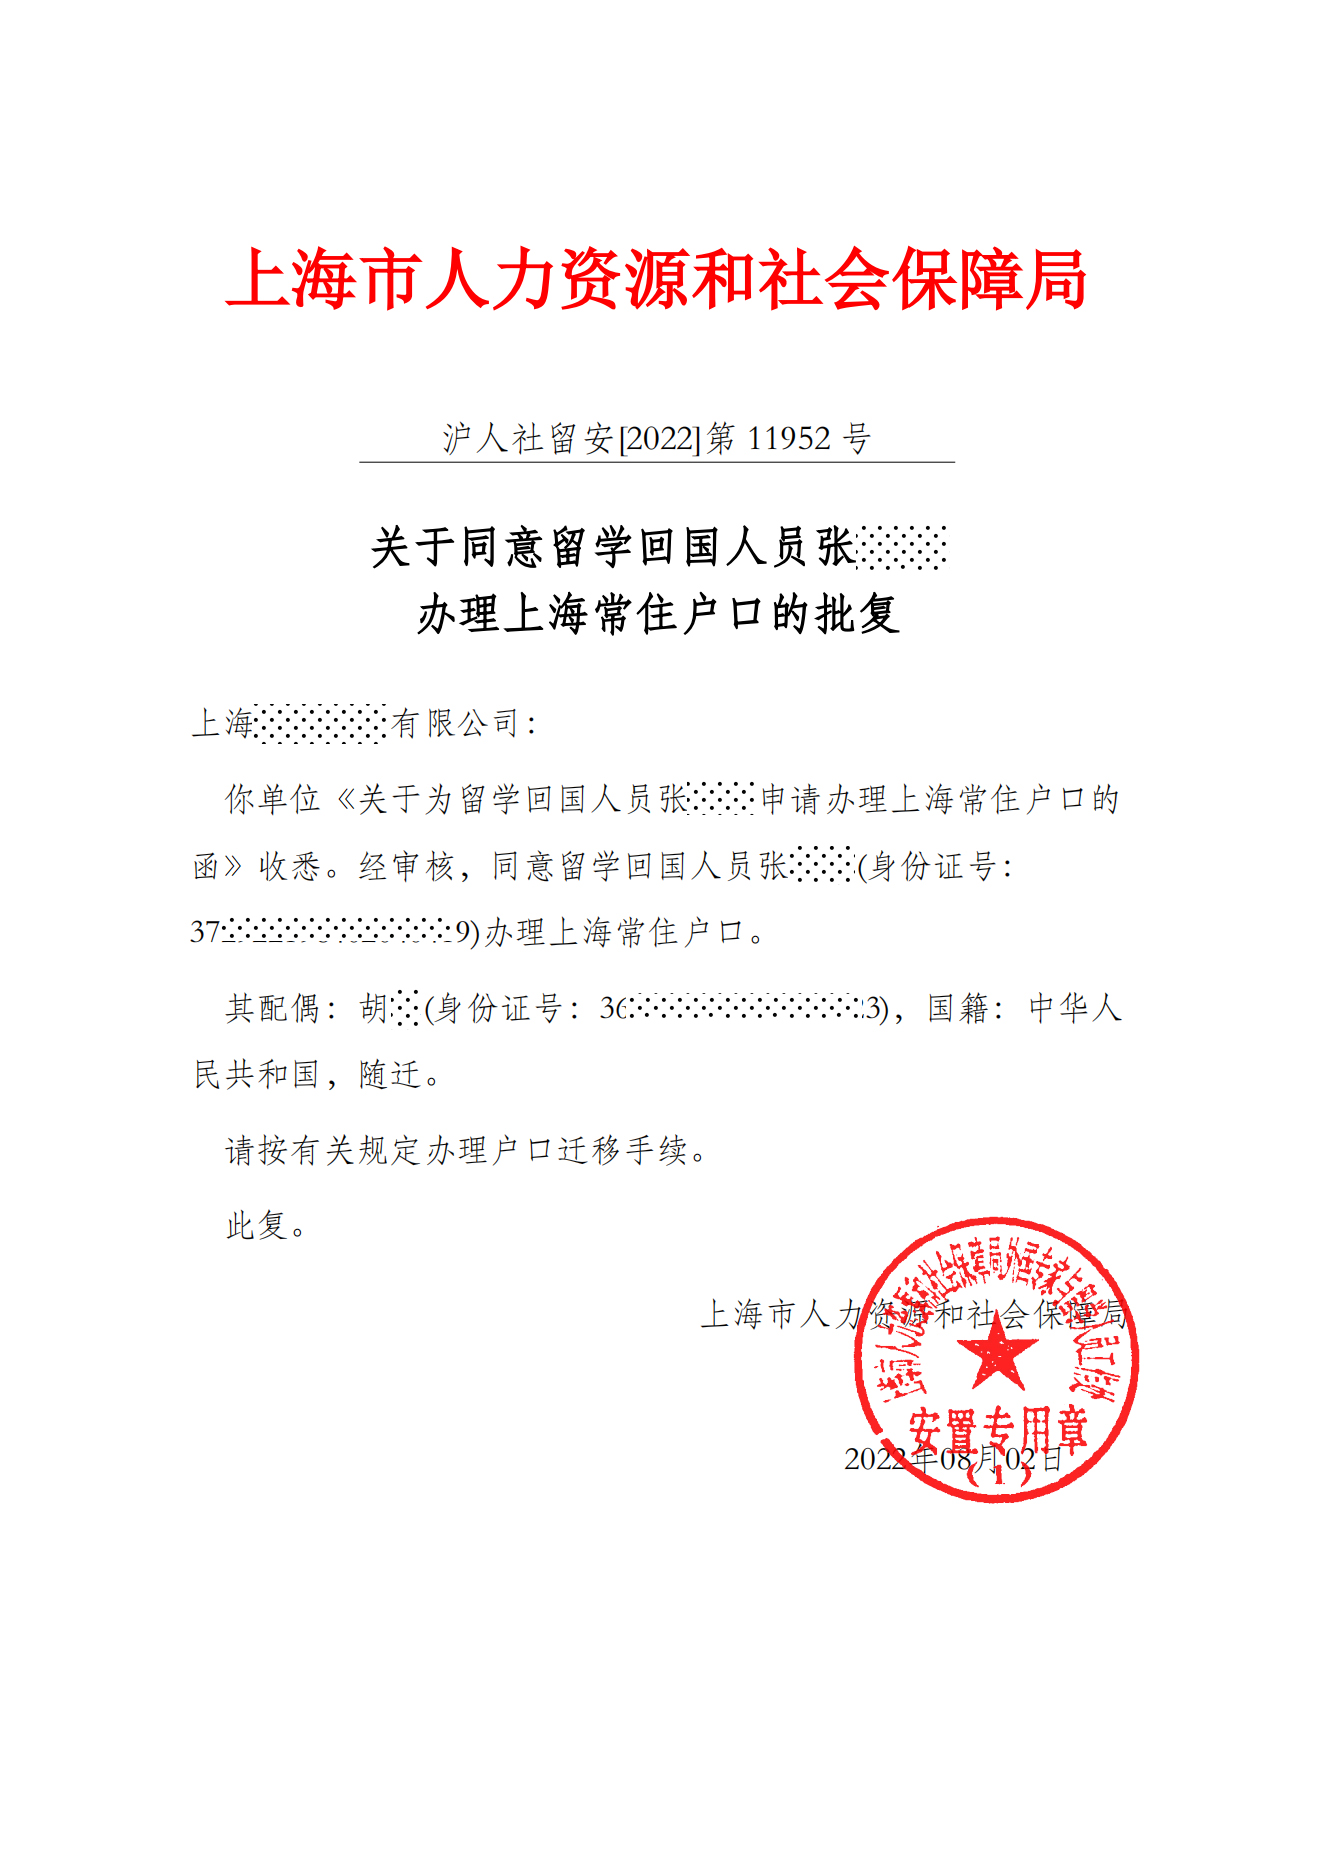 上海留学生落户批复